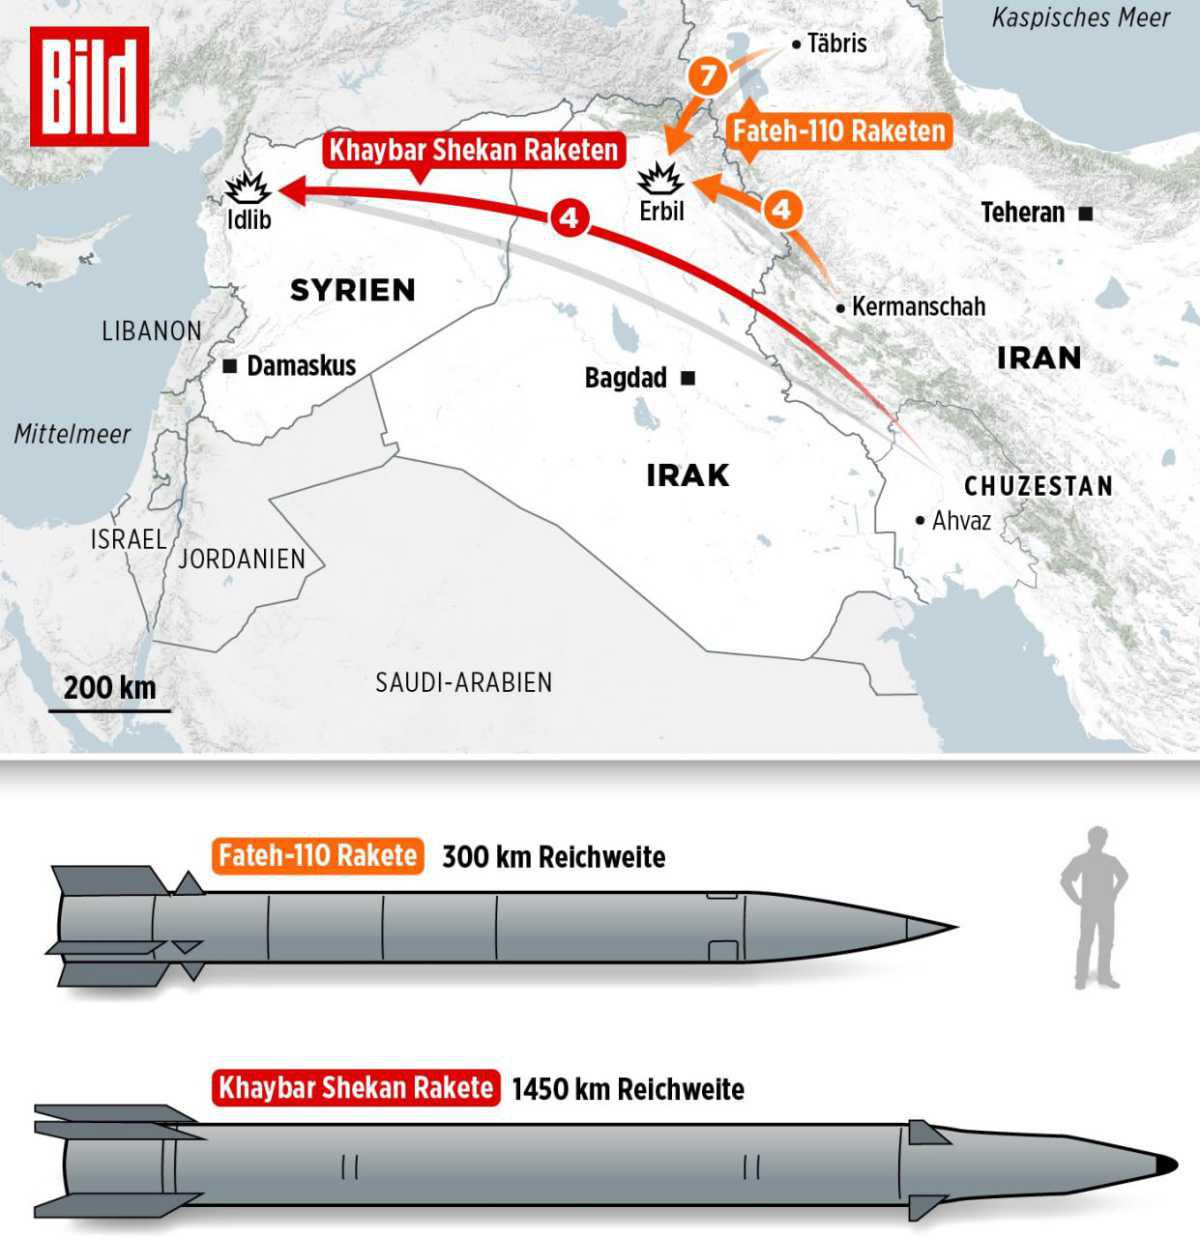 لأول مرة إيران تثبت أنها قادرة على مهاجمة إسرائيل بشكل مباشر بالصواريخ الباليستية